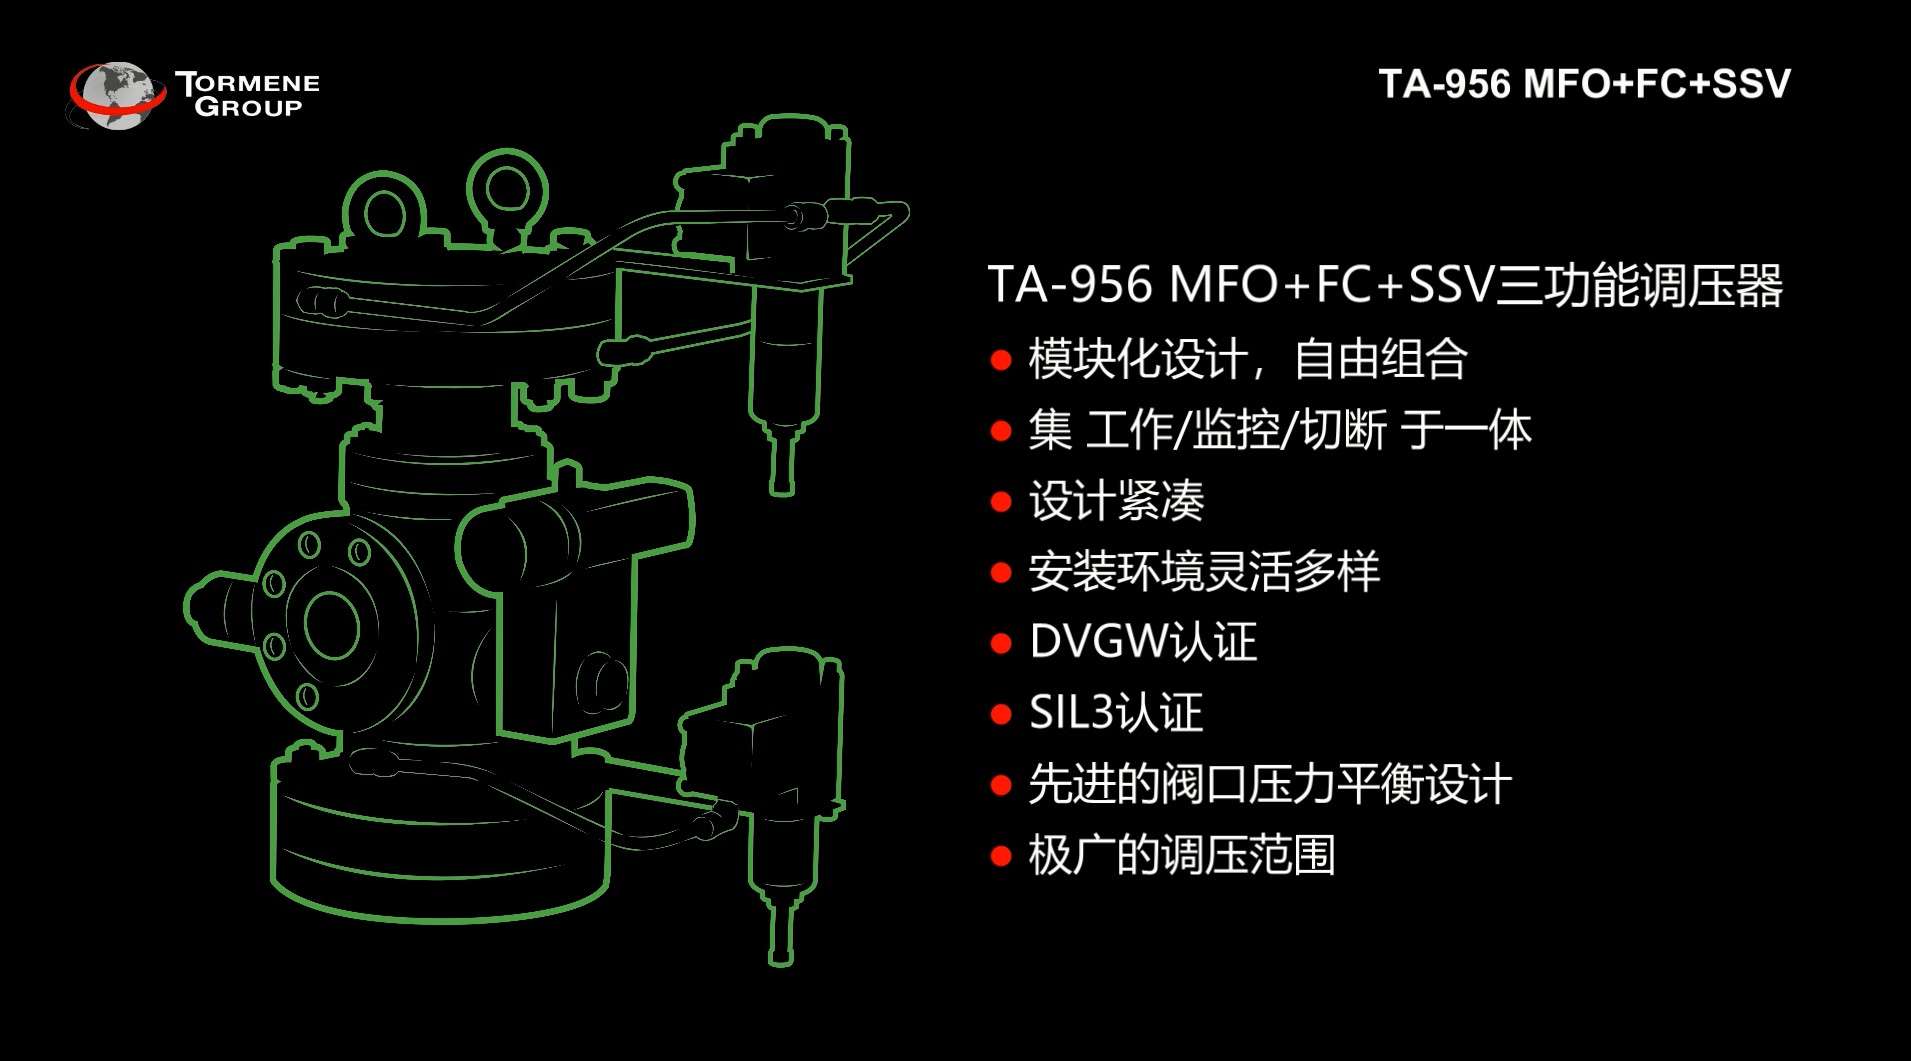 托美尼调压器TA-956 MFO+FC+SSV三功能调压器